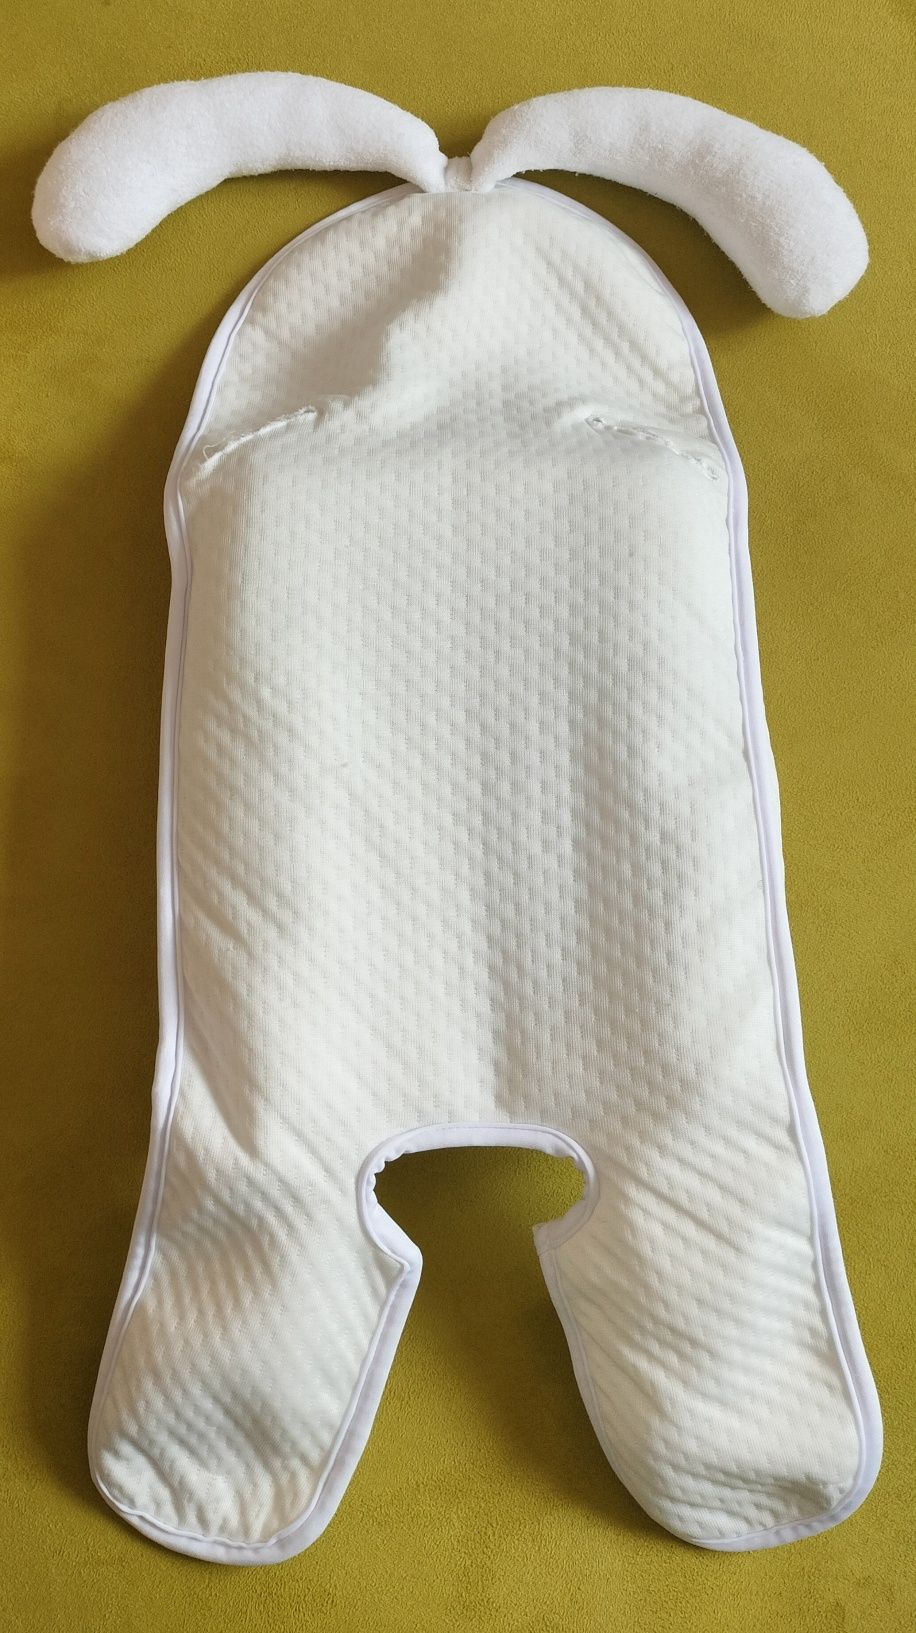 2x Wkład wkładka wypełnienie do nosidełka lorelli fotelika dla niemowl